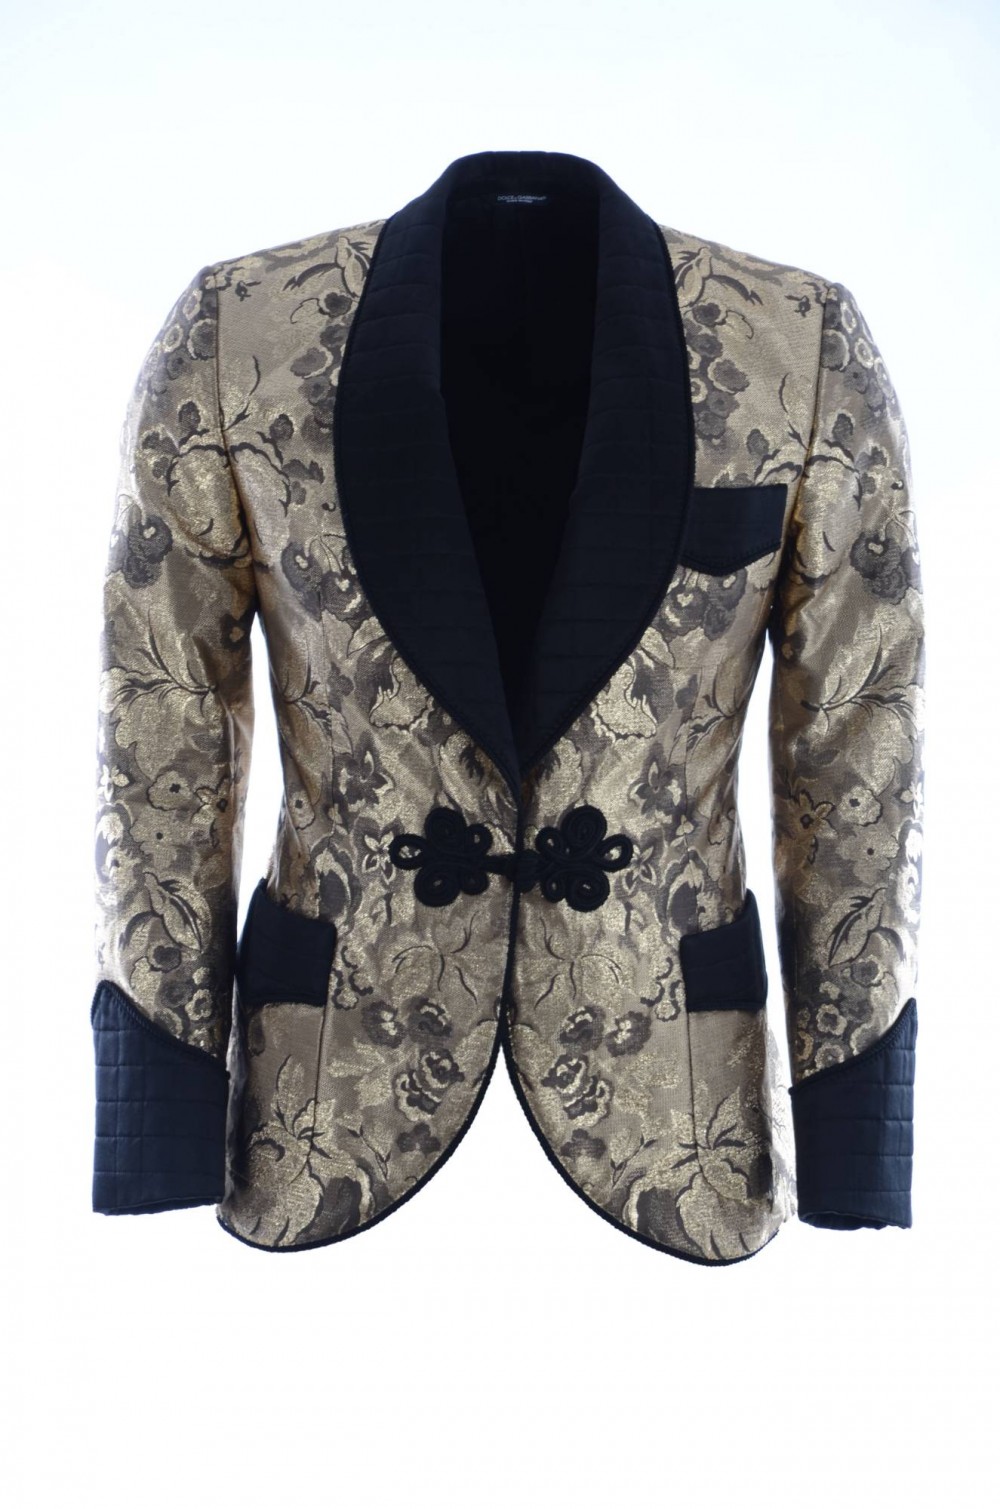 dolce & gabbana men's suit jackets